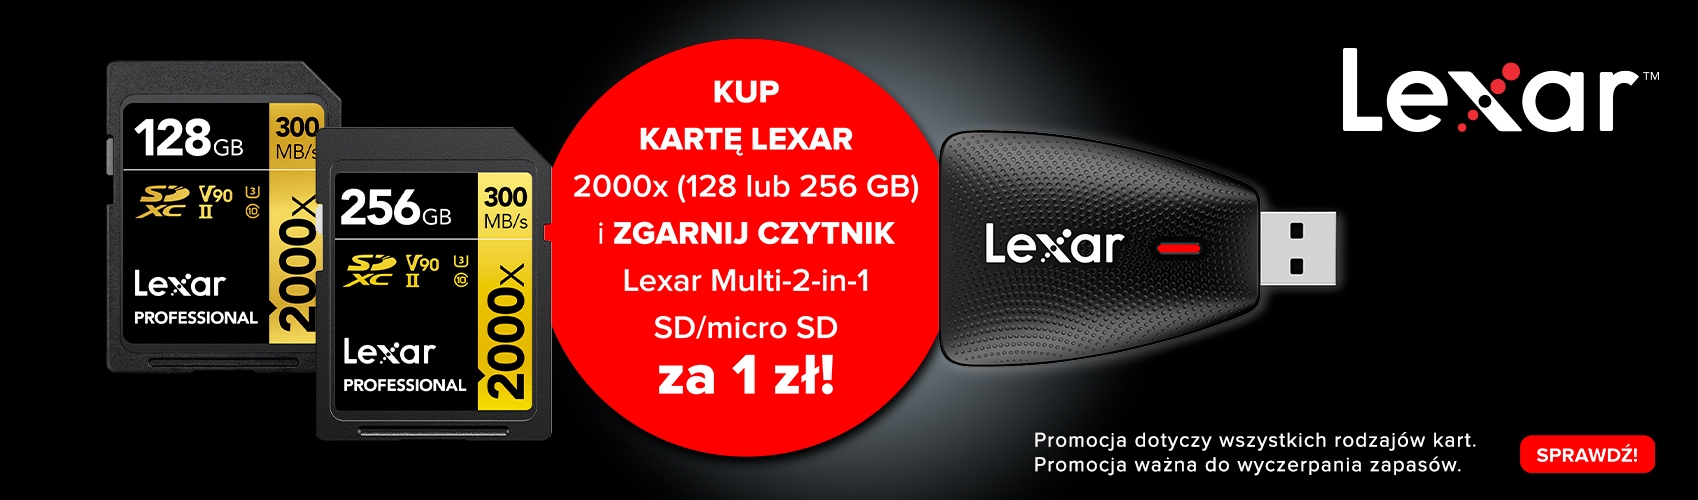 Lexar|Kup kartę Lexar 2000x i zgarnij czytnik za 1zł